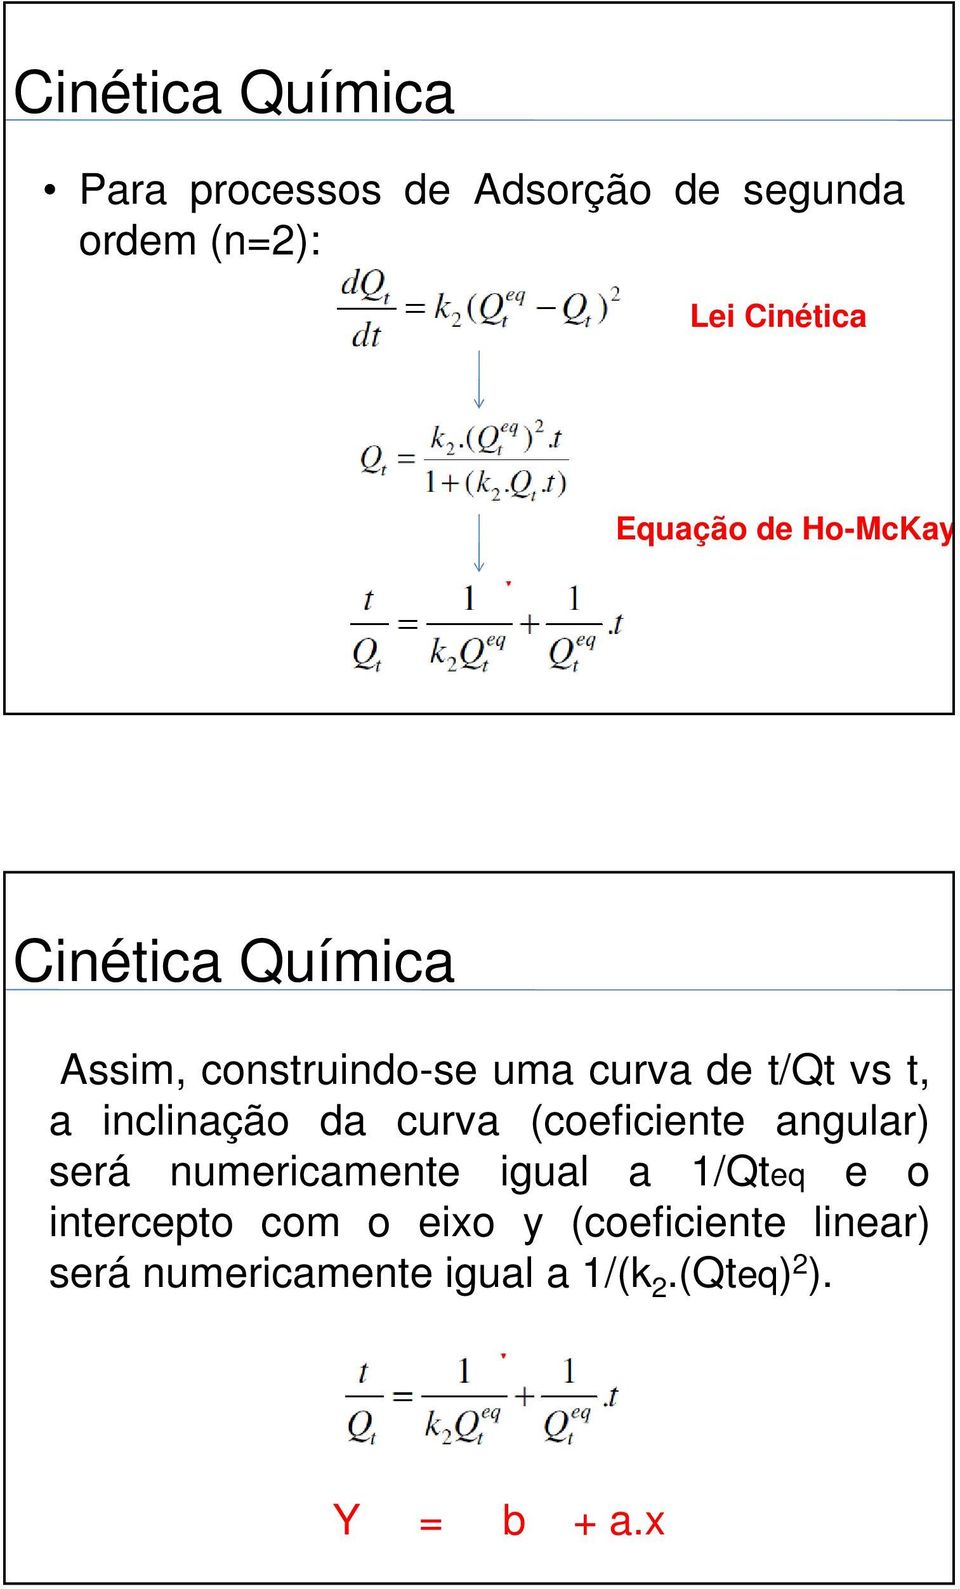 (coeficiente angular) será numericamente igual a 1/Qteq e o intercepto com o